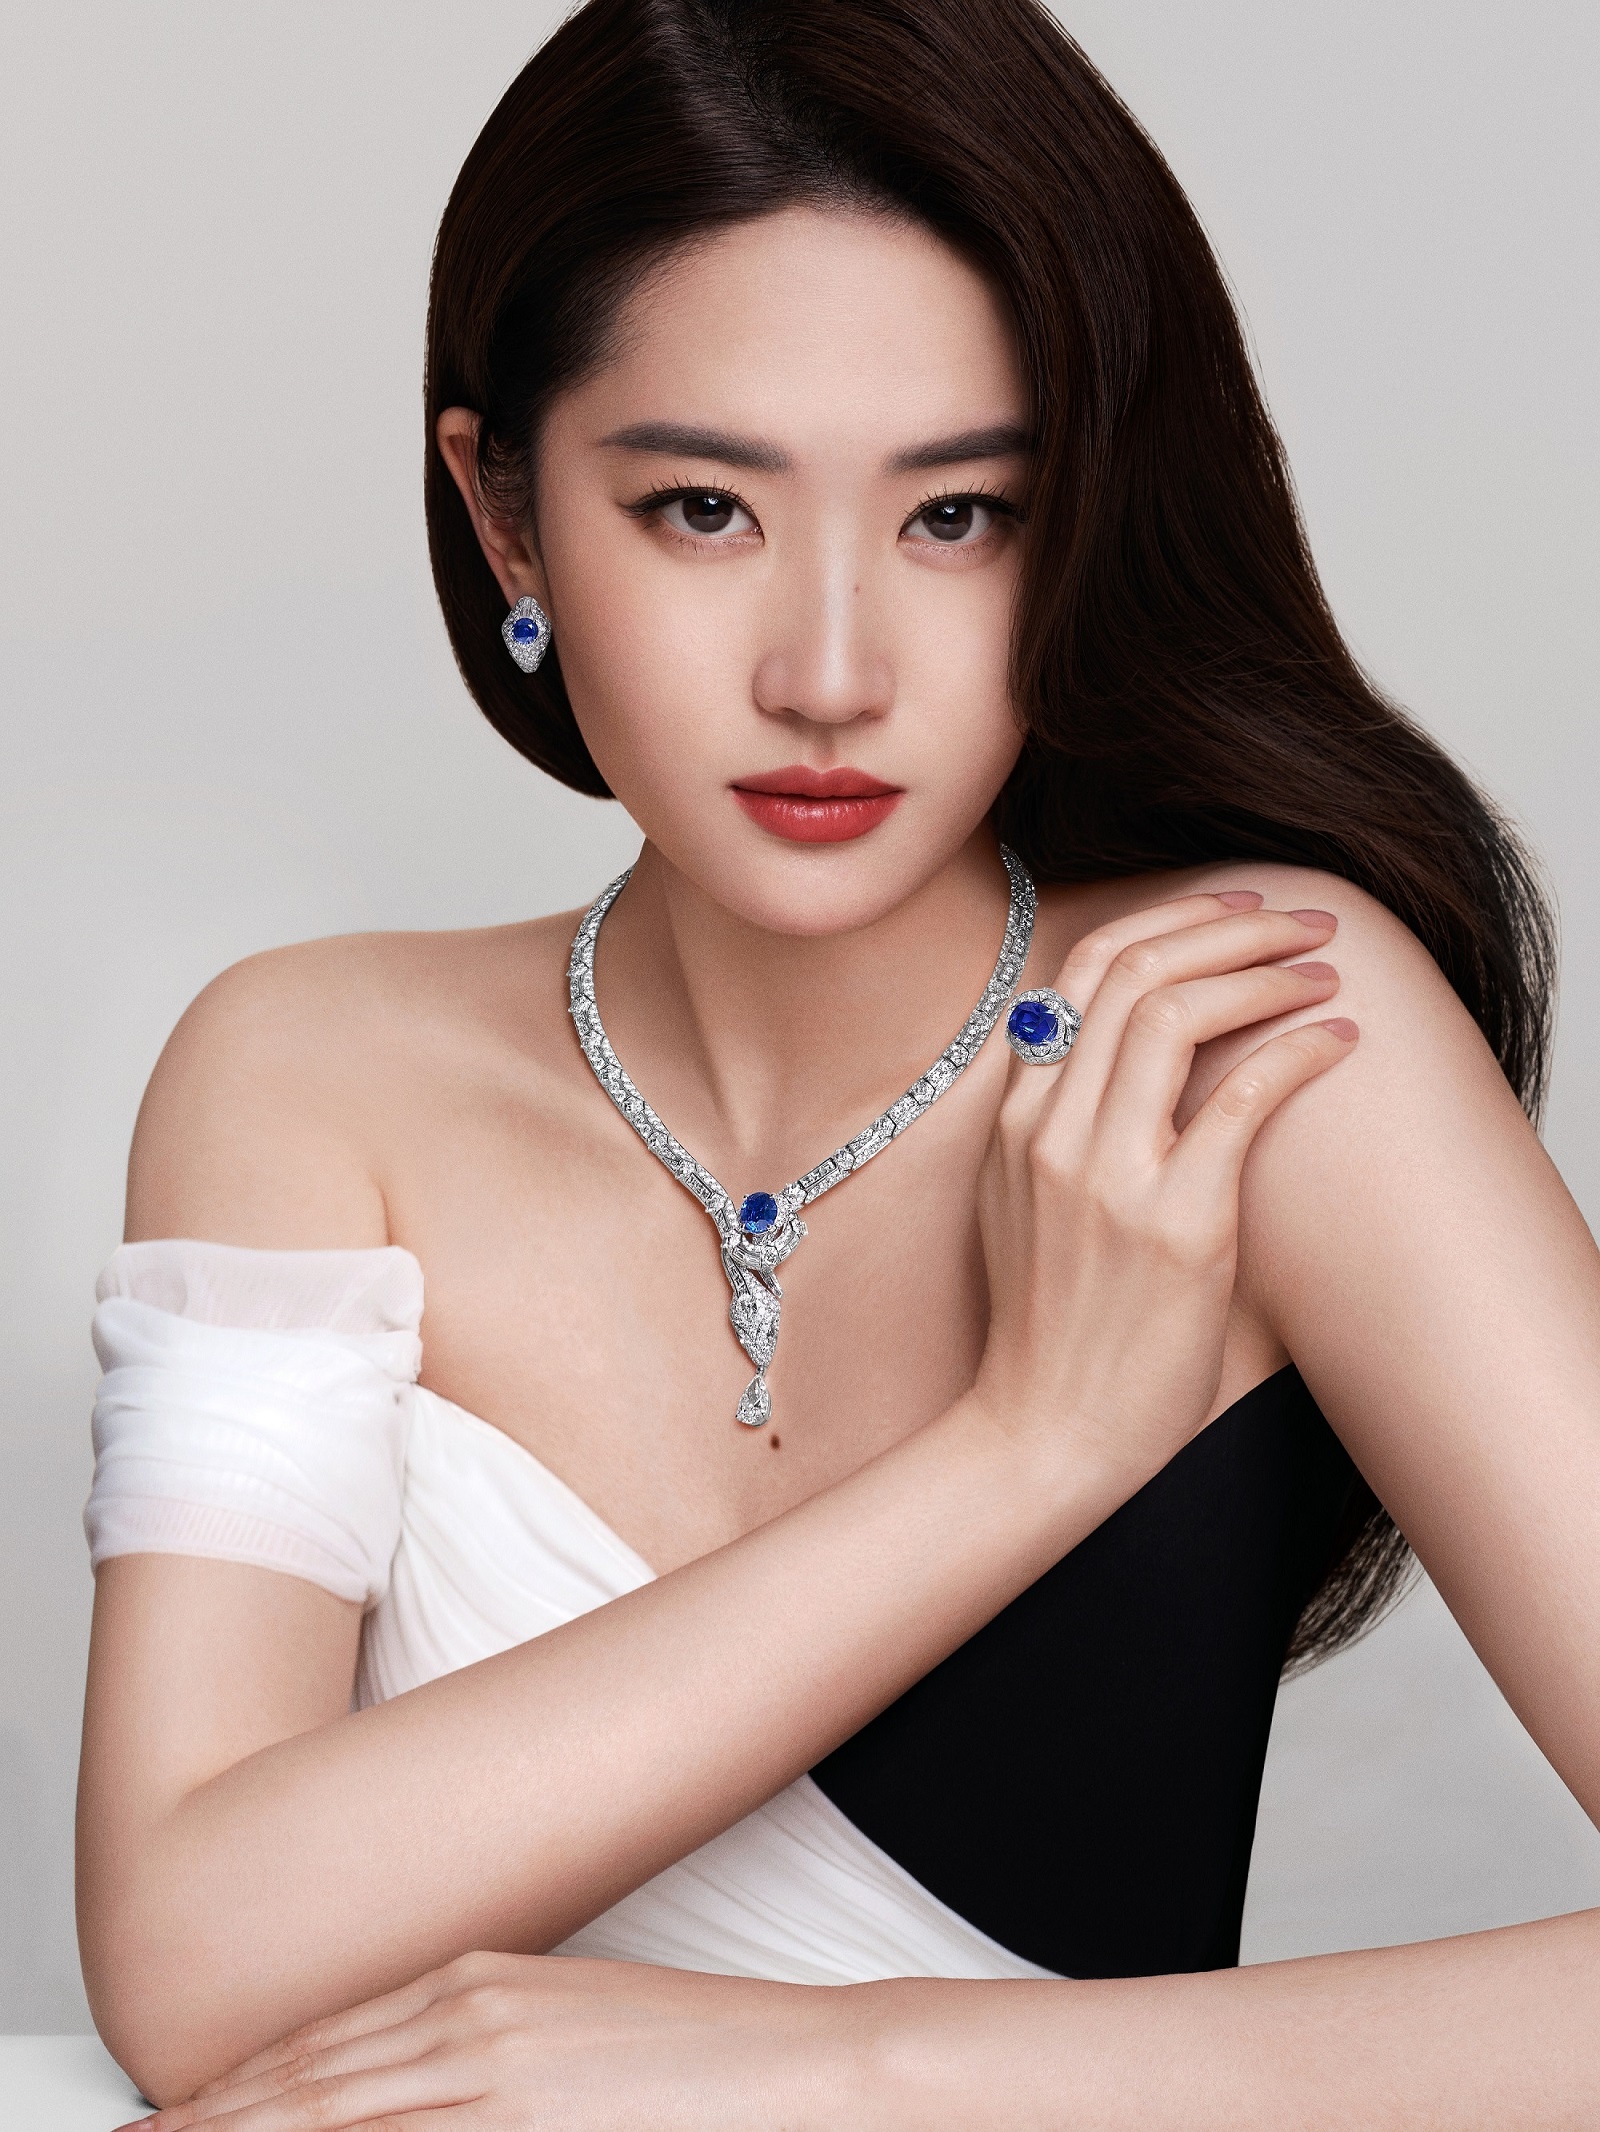 新任宝格丽品牌大使的中国女星刘亦菲演绎Serpenti系列顶级珠宝。图／宝格丽提供